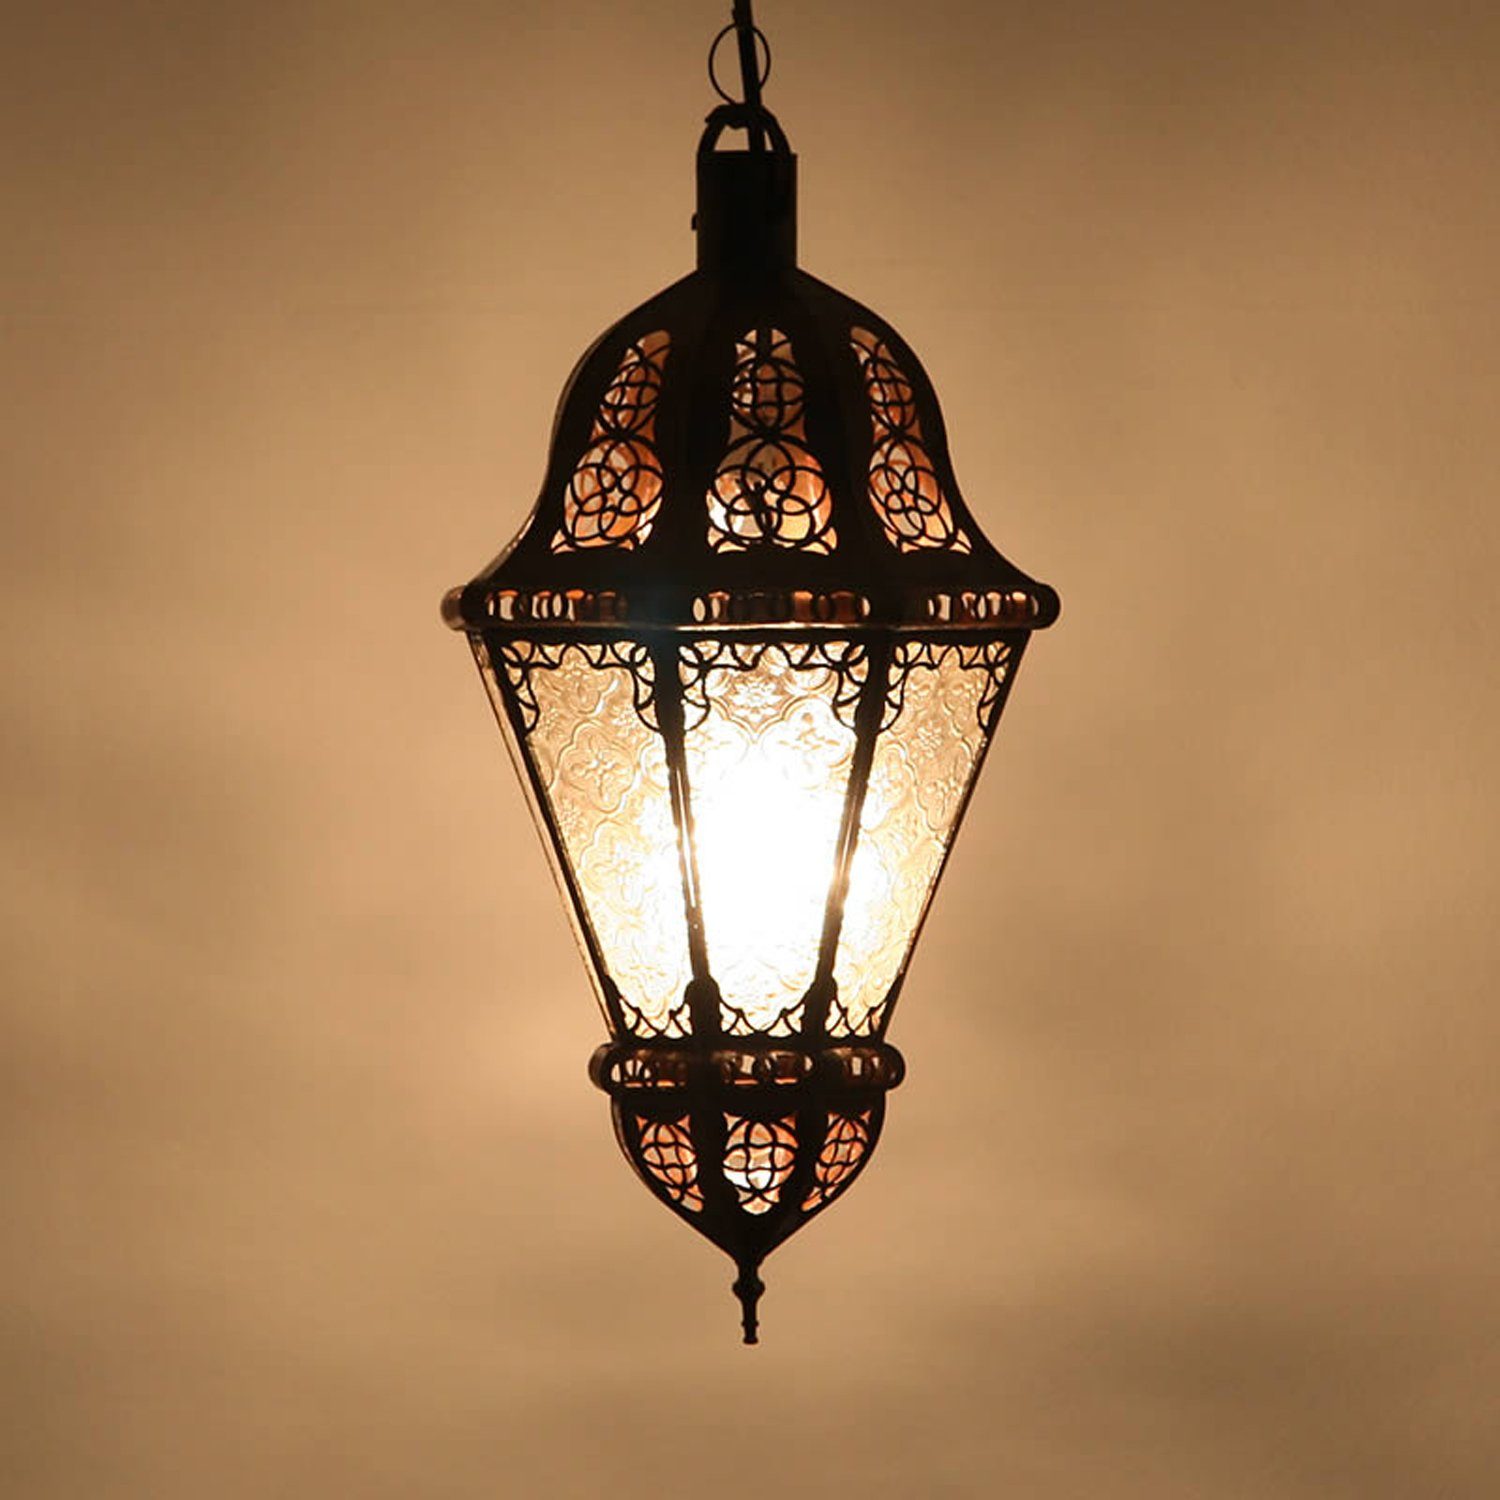 Casa Moro Lampenschirm Marokkanische orientalische Handmade Salma Weiß Reliefglas Lampe Eisen, Hängeleuchte aus L1392 und